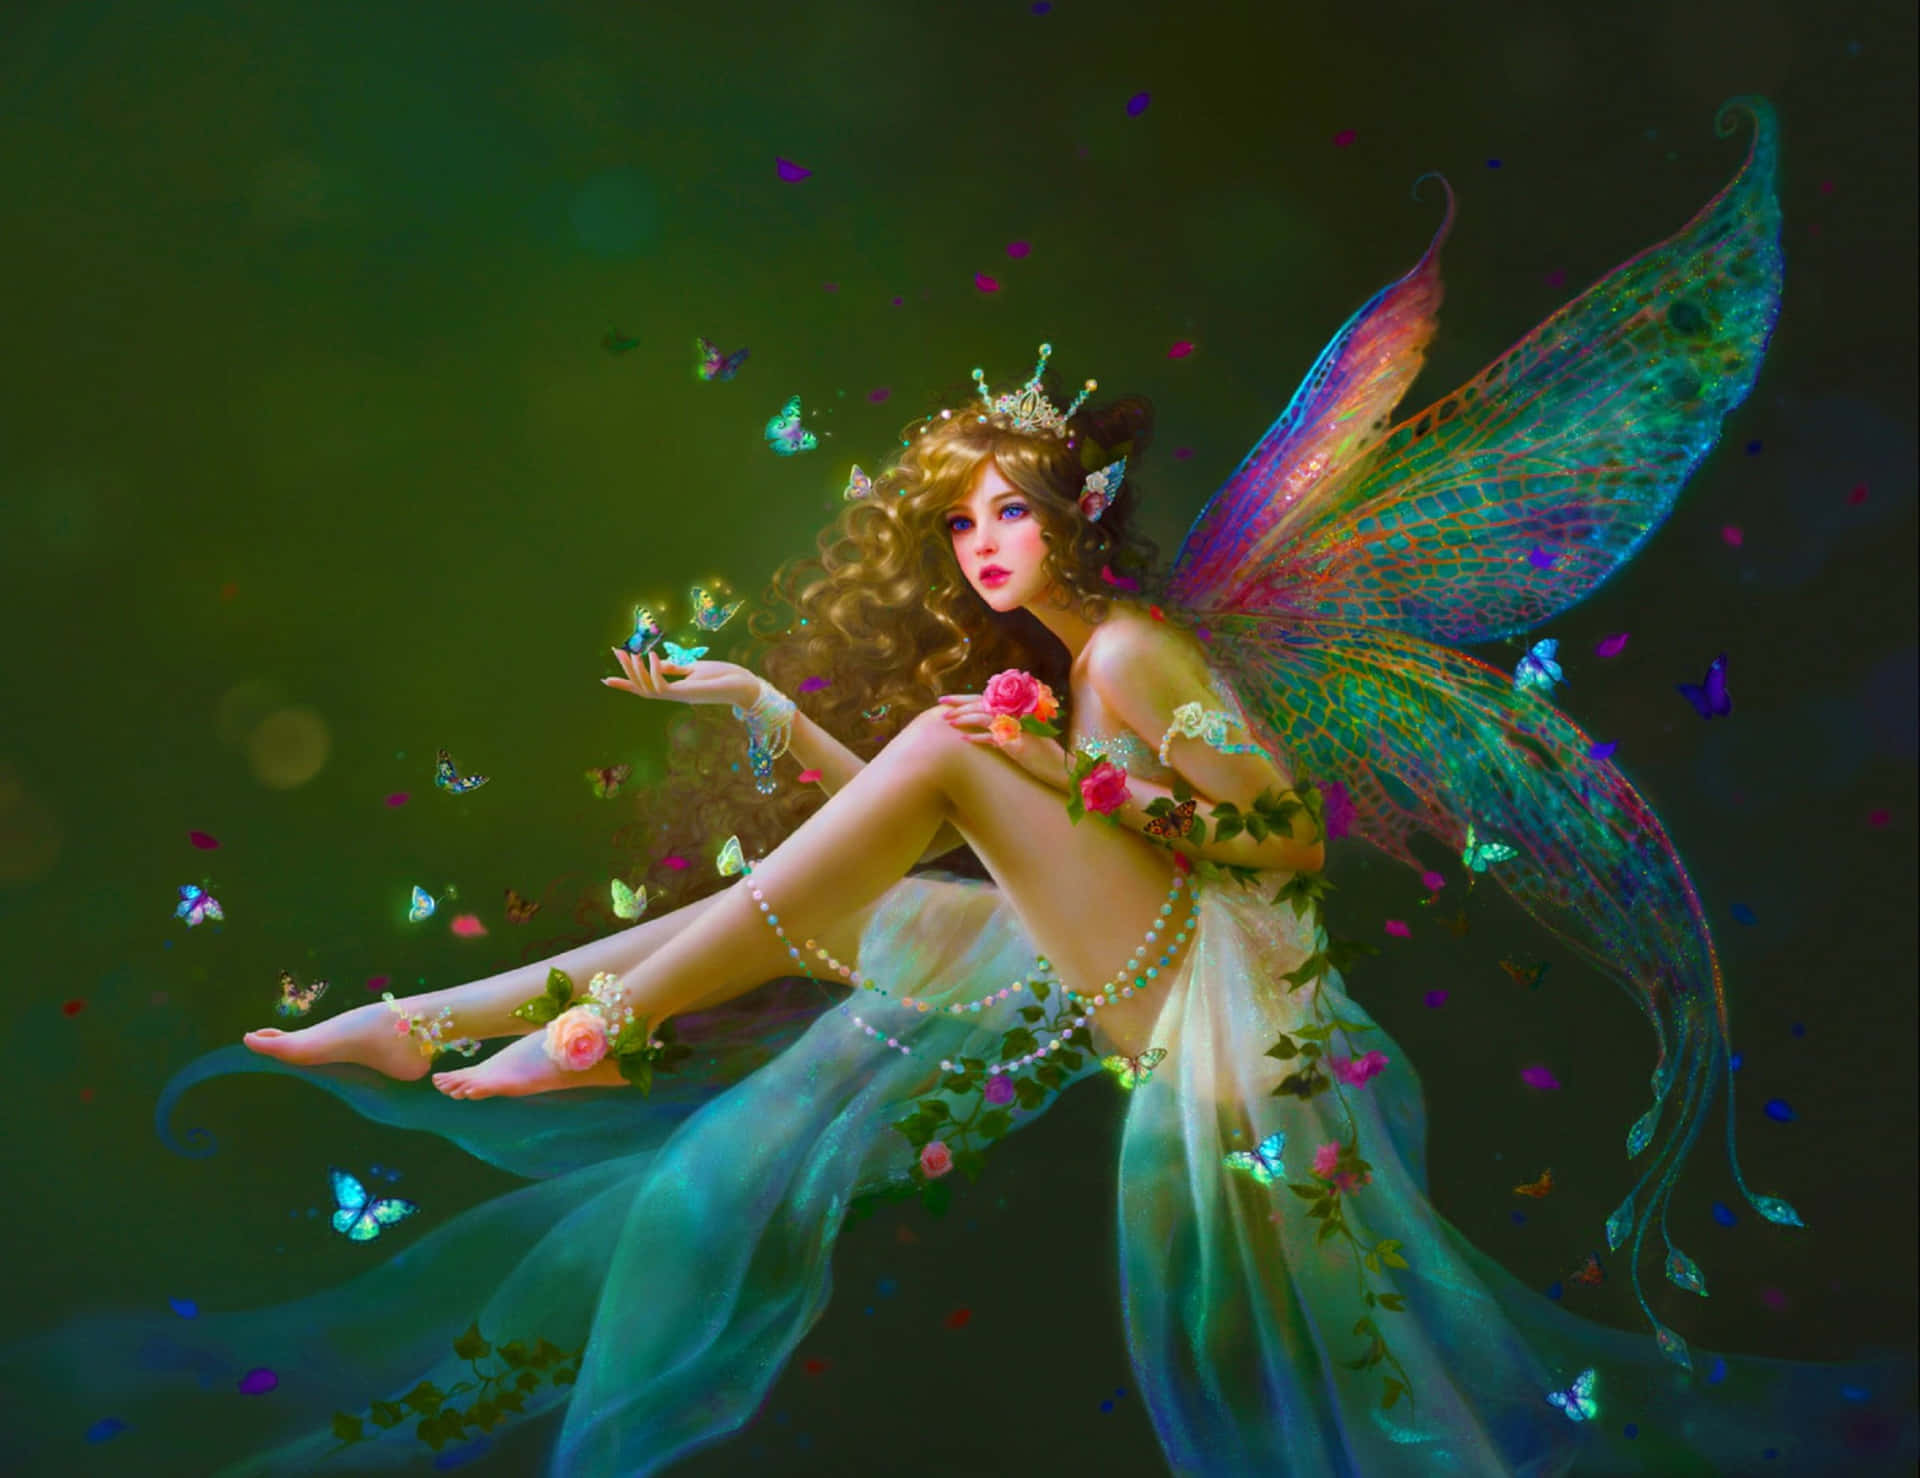 Magic Fairy in a Mystical Land